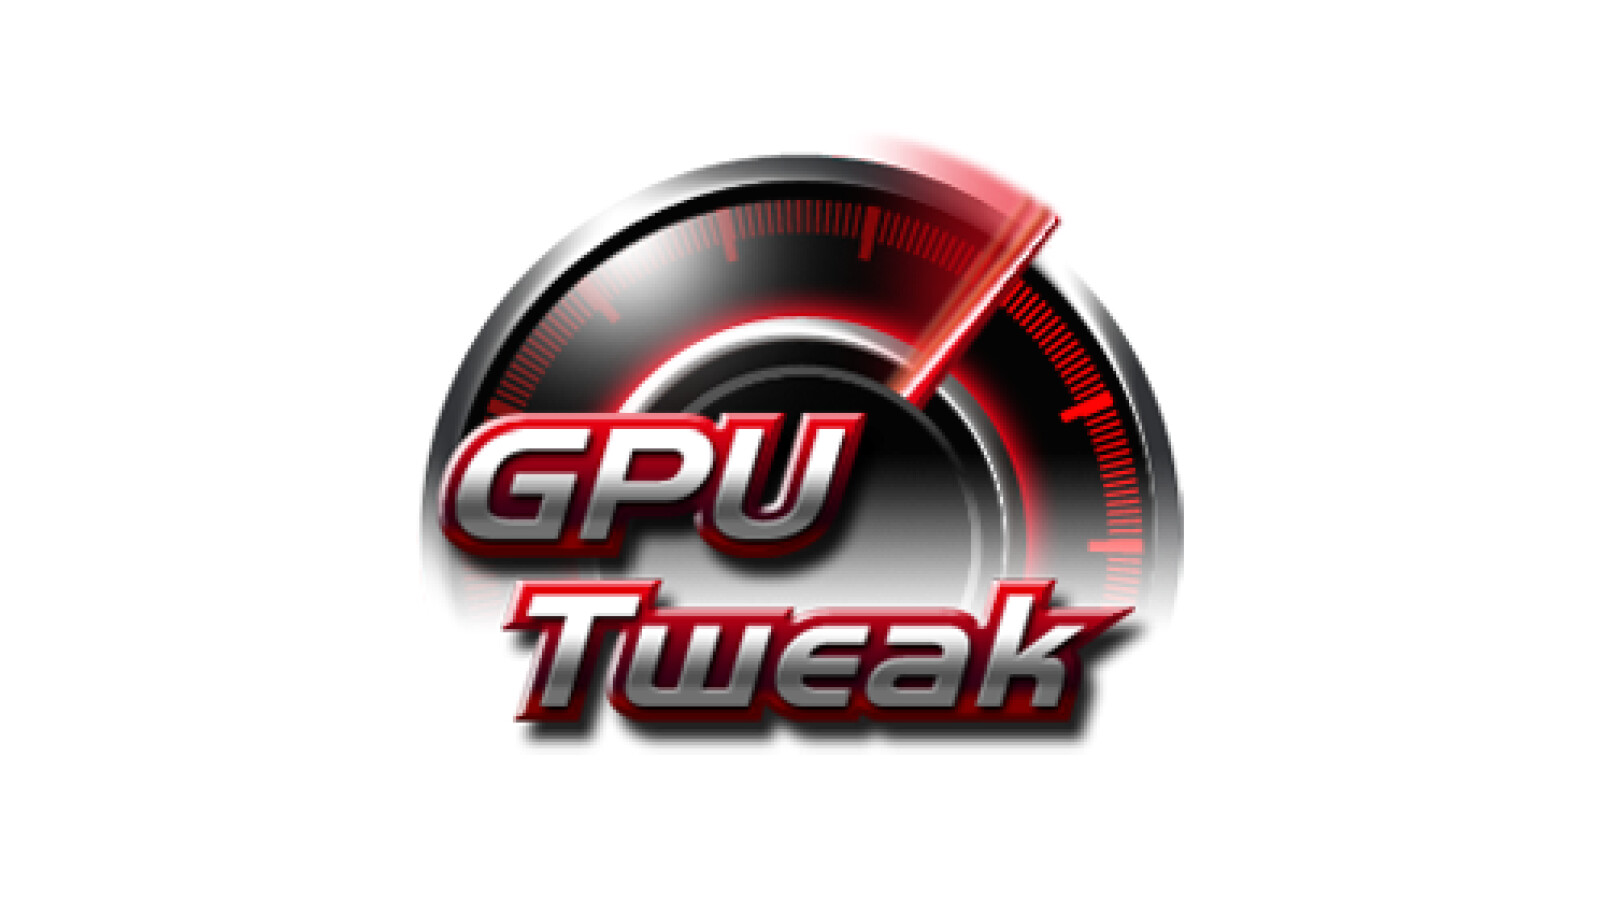 instal the last version for android ASUS GPU Tweak II 2.3.9.0 / III 1.6.9.4